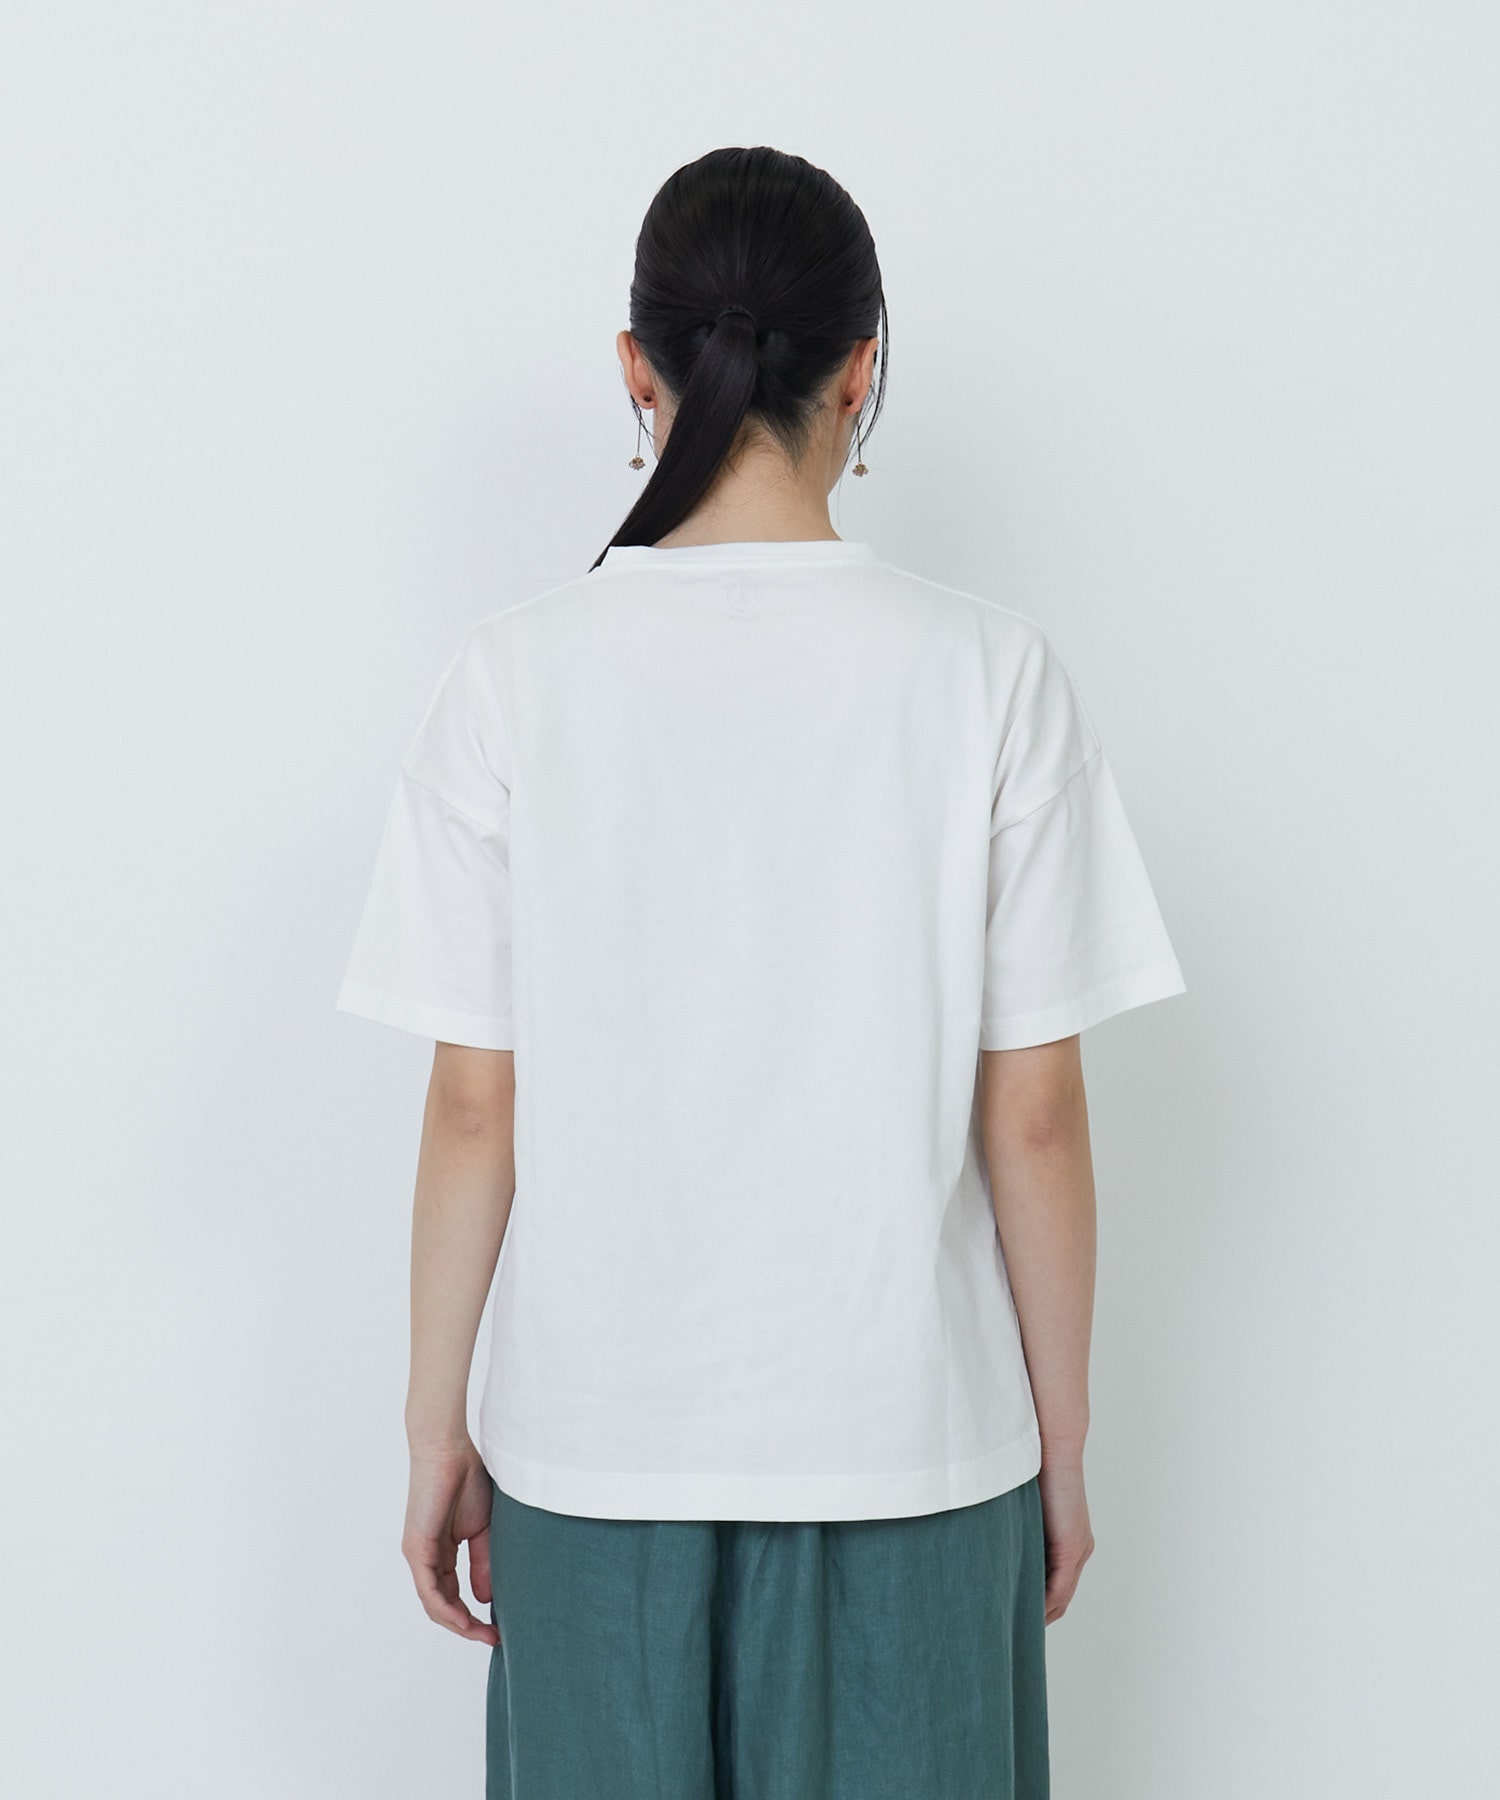 【LOISIR】【アーティストコラボ】PulloaプリントTシャツ 詳細画像 チャコールグレー 7